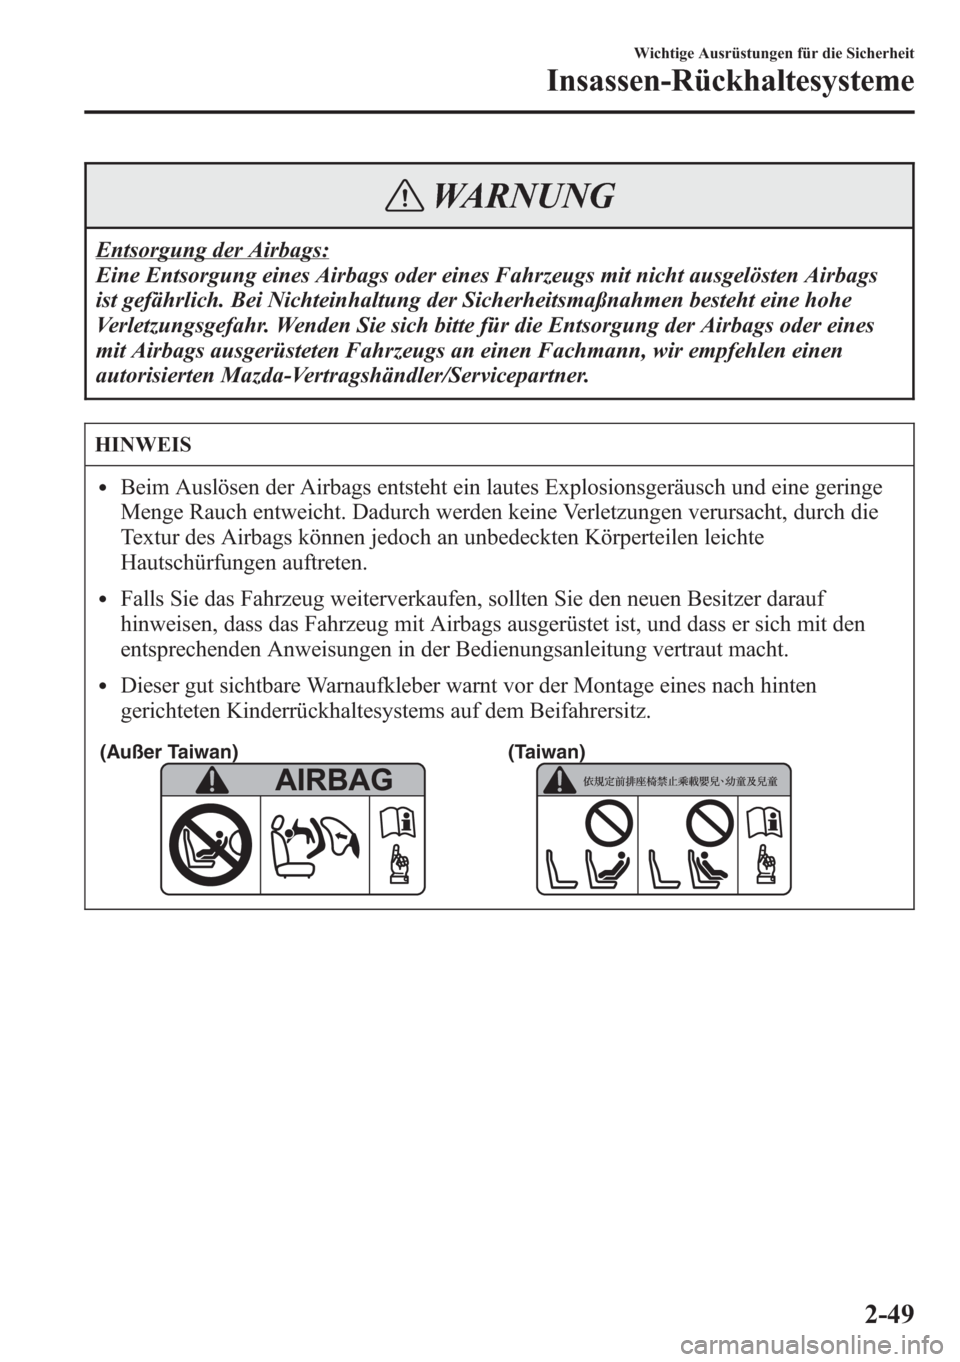 MAZDA MODEL 6 2015  Betriebsanleitung (in German) WARNUNG
Entsorgung der Airbags:
Eine Entsorgung eines Airbags oder eines Fahrzeugs mit nicht ausgelösten Airbags
ist gefährlich. Bei Nichteinhaltung der Sicherheitsmaßnahmen besteht eine hohe
Verle